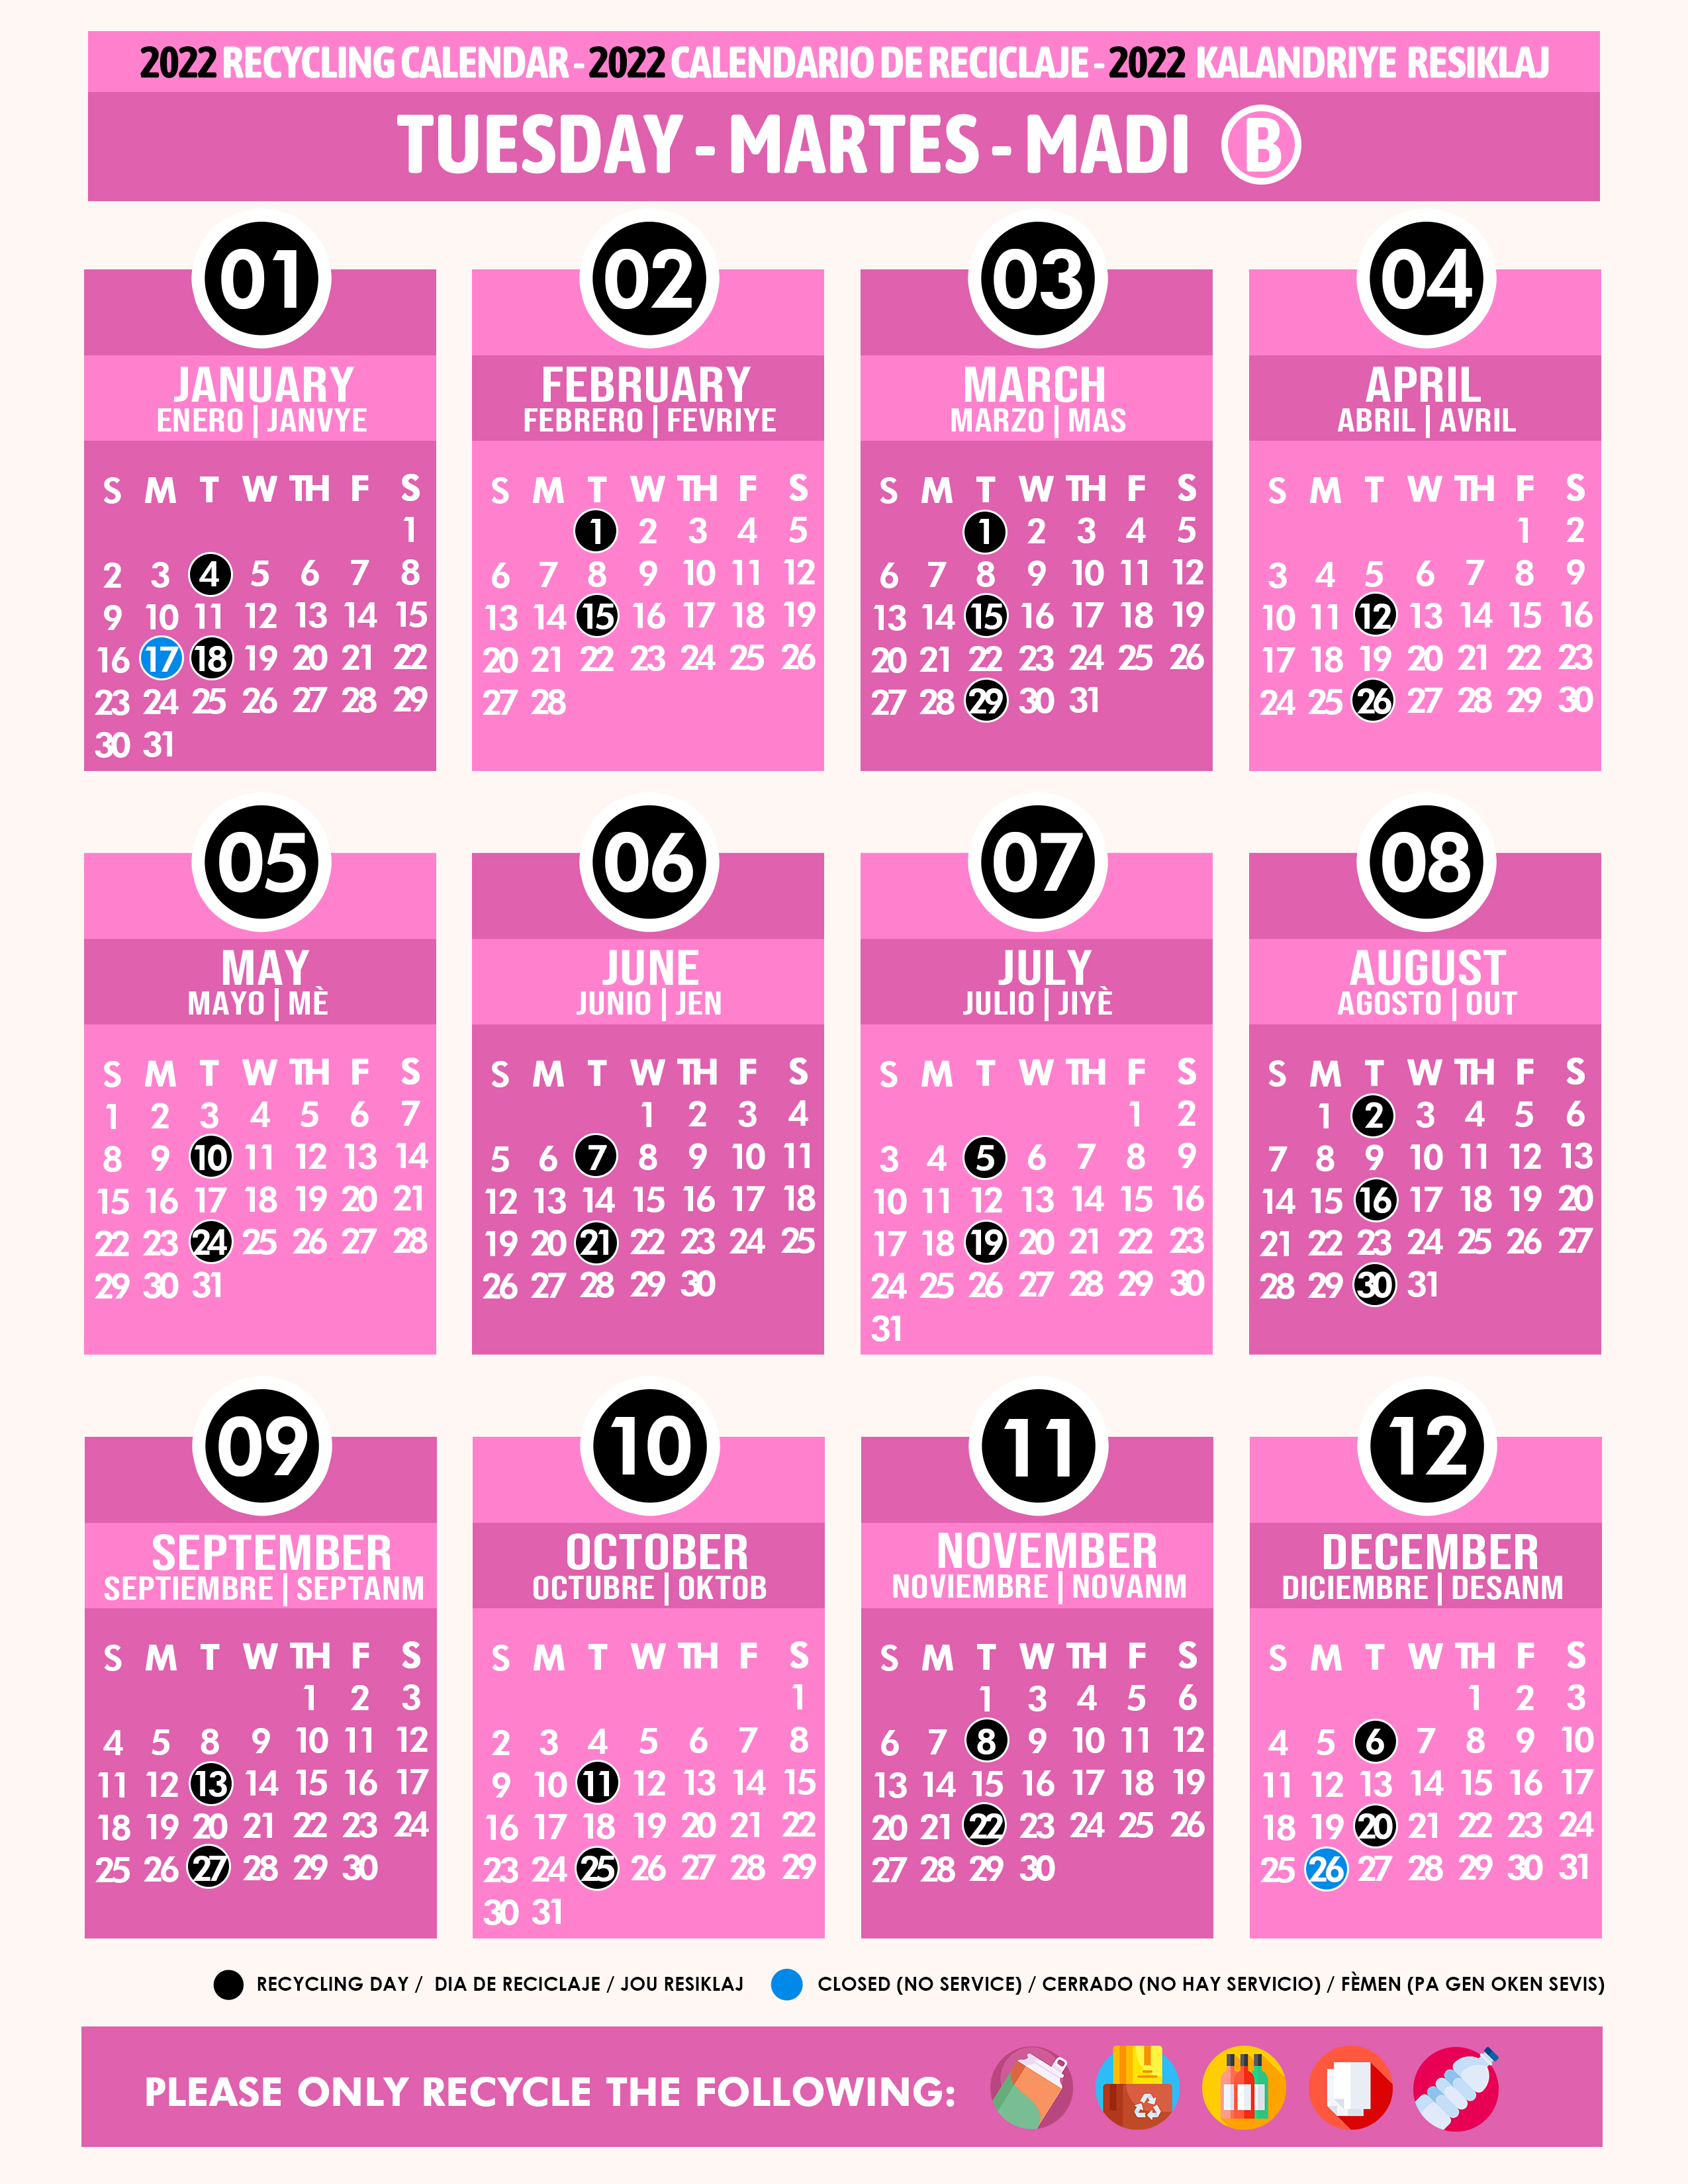 Miami Dade Recycling Calendar 2022 Recycling Calendar 2022 Tuesday B Pink - Miami